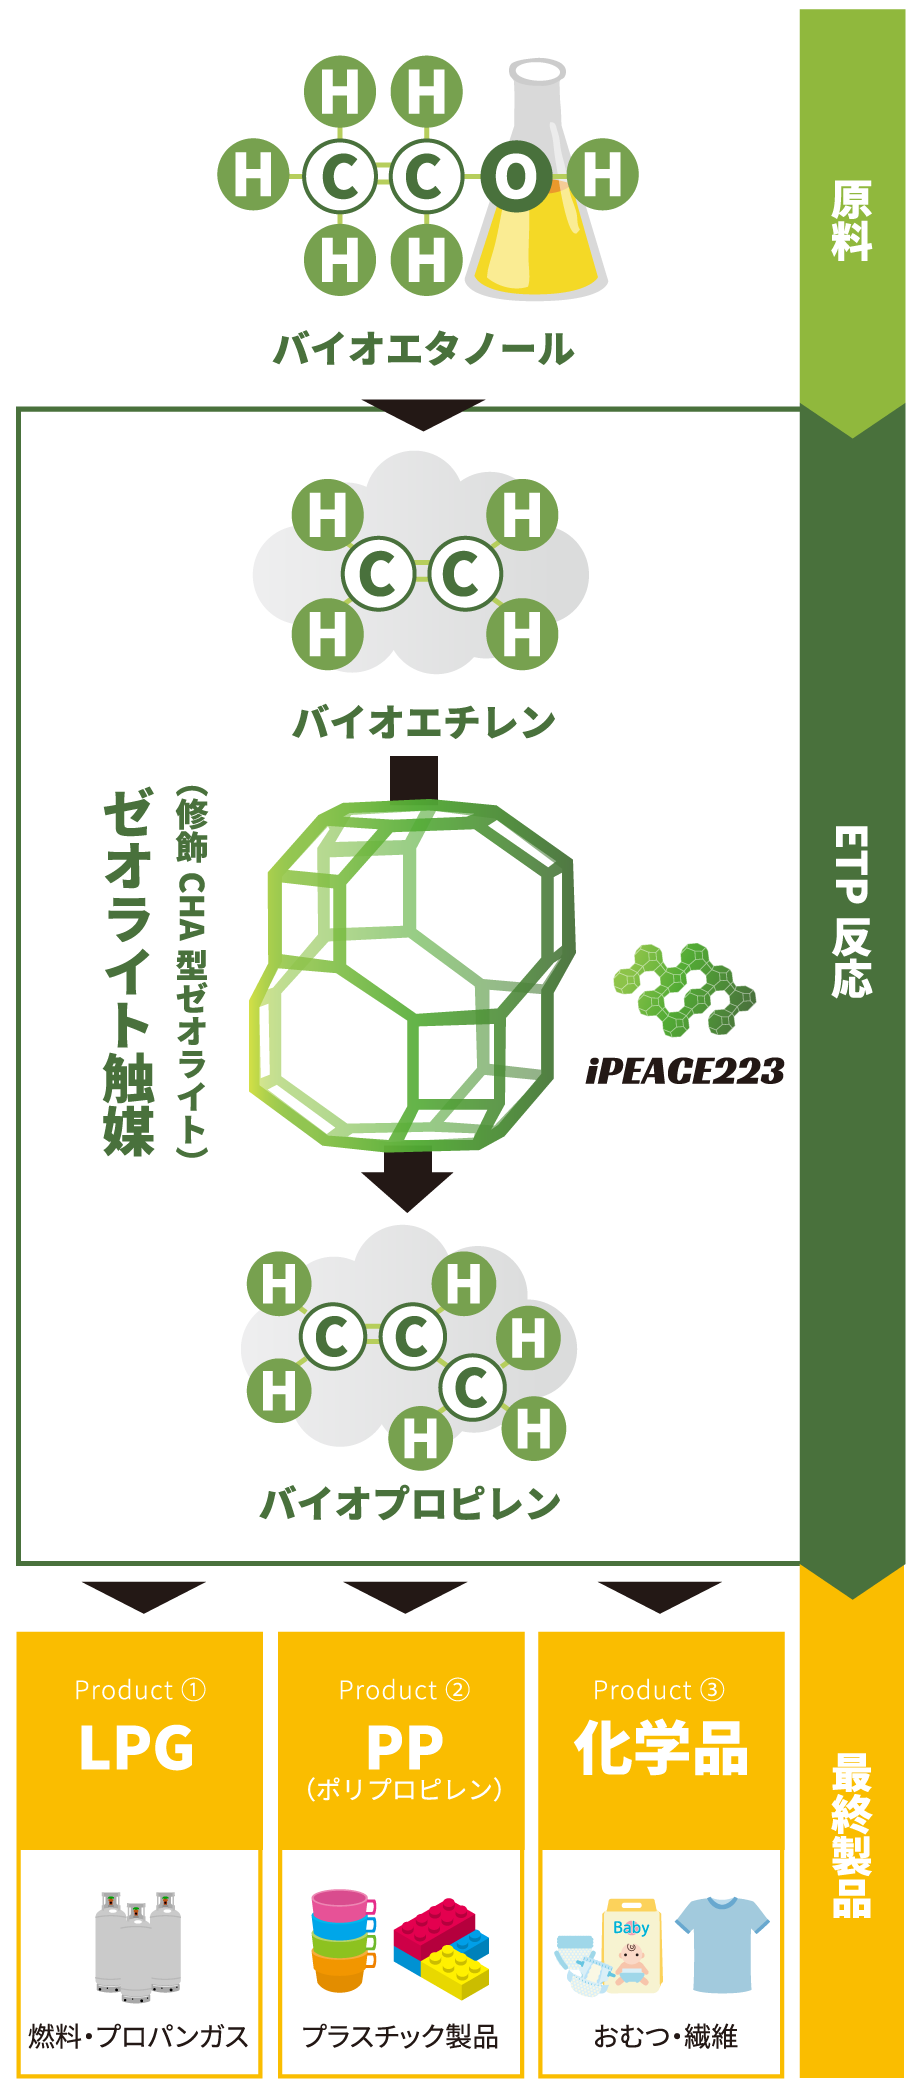 iPEACE223の技術 ゼオライト触媒、水素化再生イメージ1